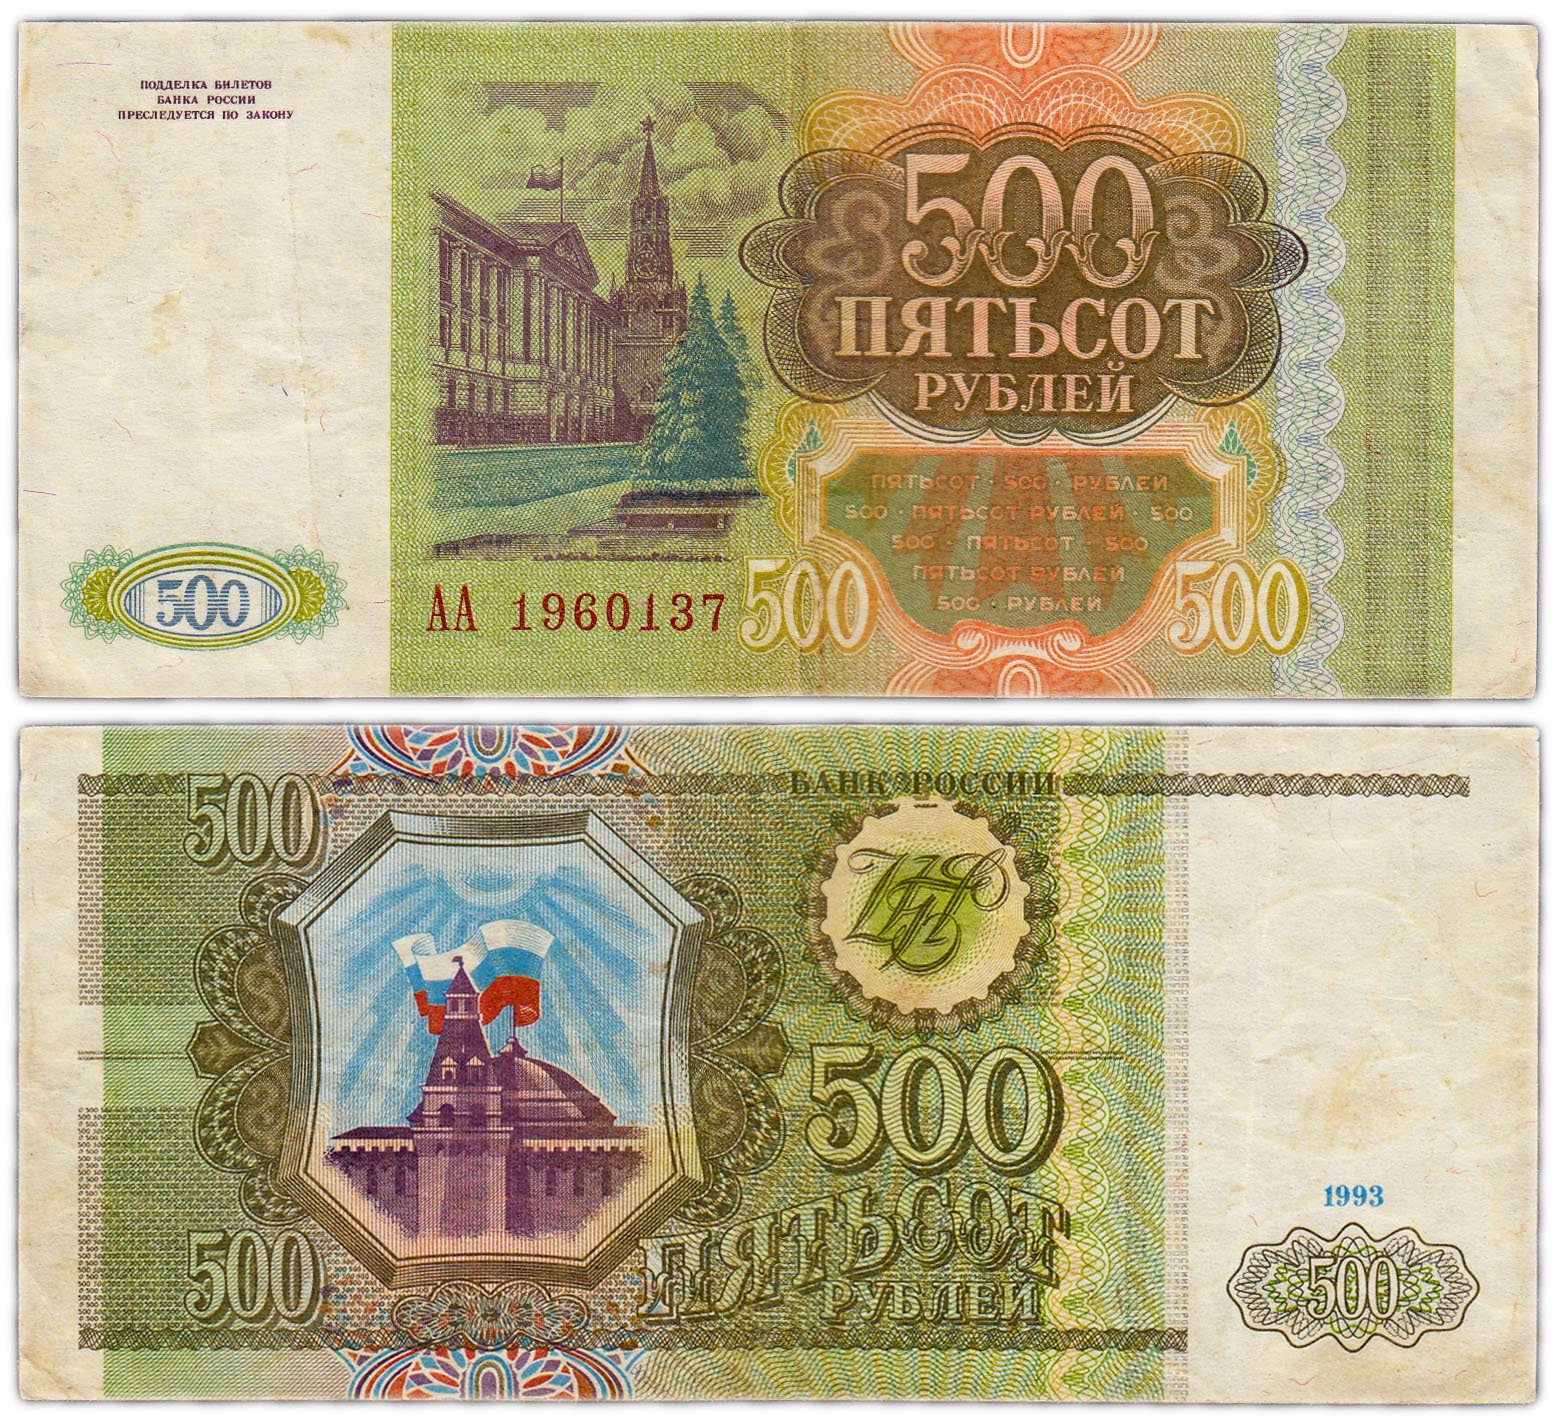 500 г в в рублях. 500 Рублей 1993. Купюра 500 рублей 1993 года. Банкнота 500 рублей 1993. Купюра 500 рублей 1993.